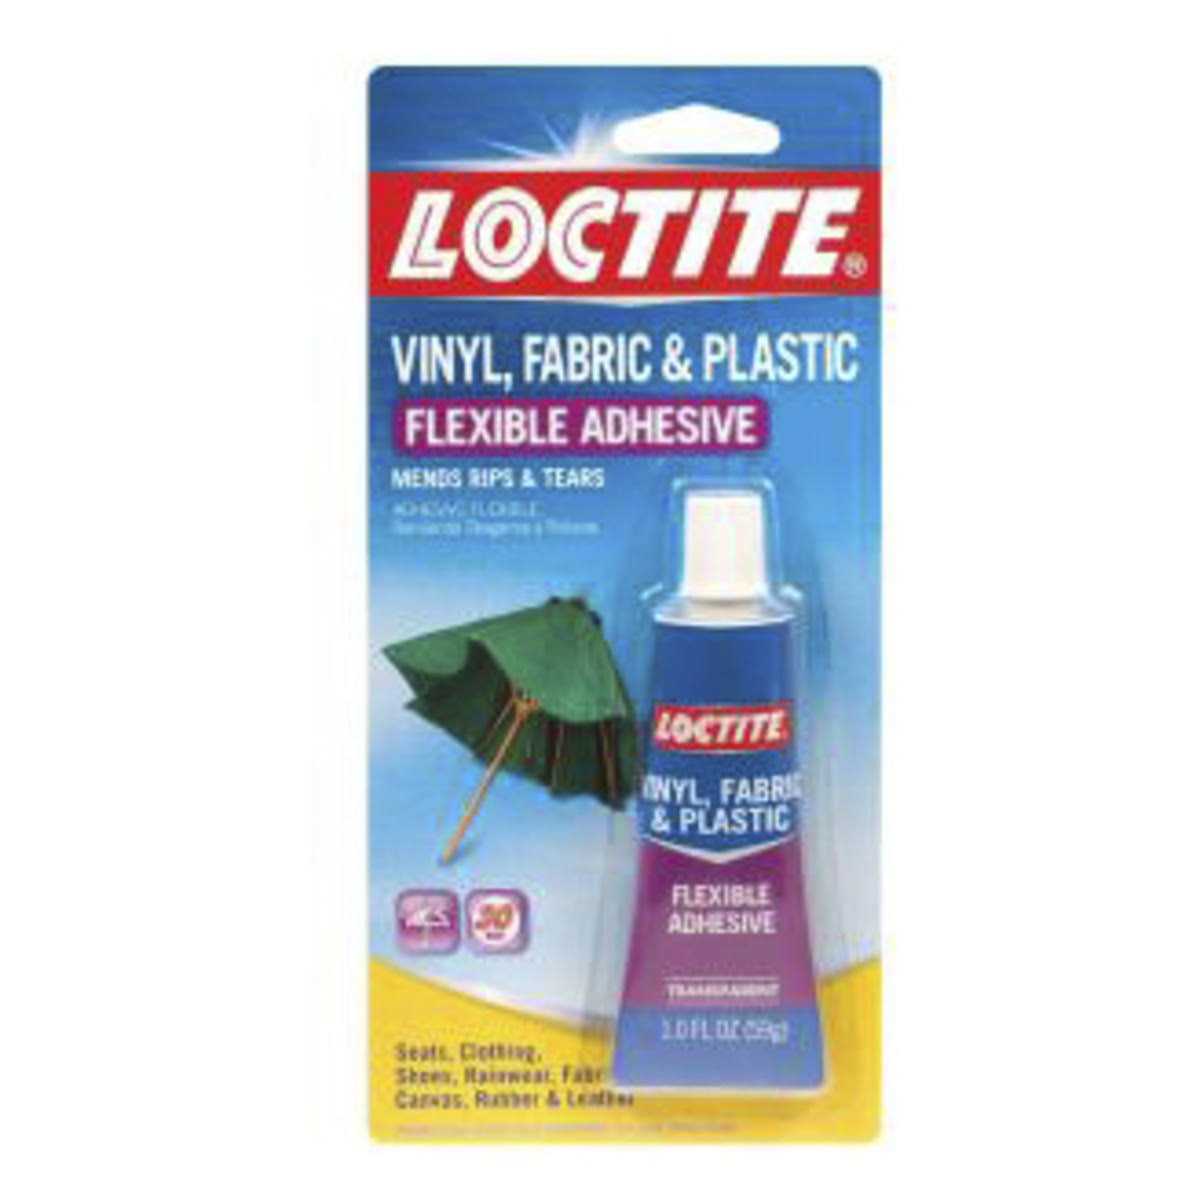 Loctite Vinyl, Fabric & Plastic Flexible Adhesive - 59g